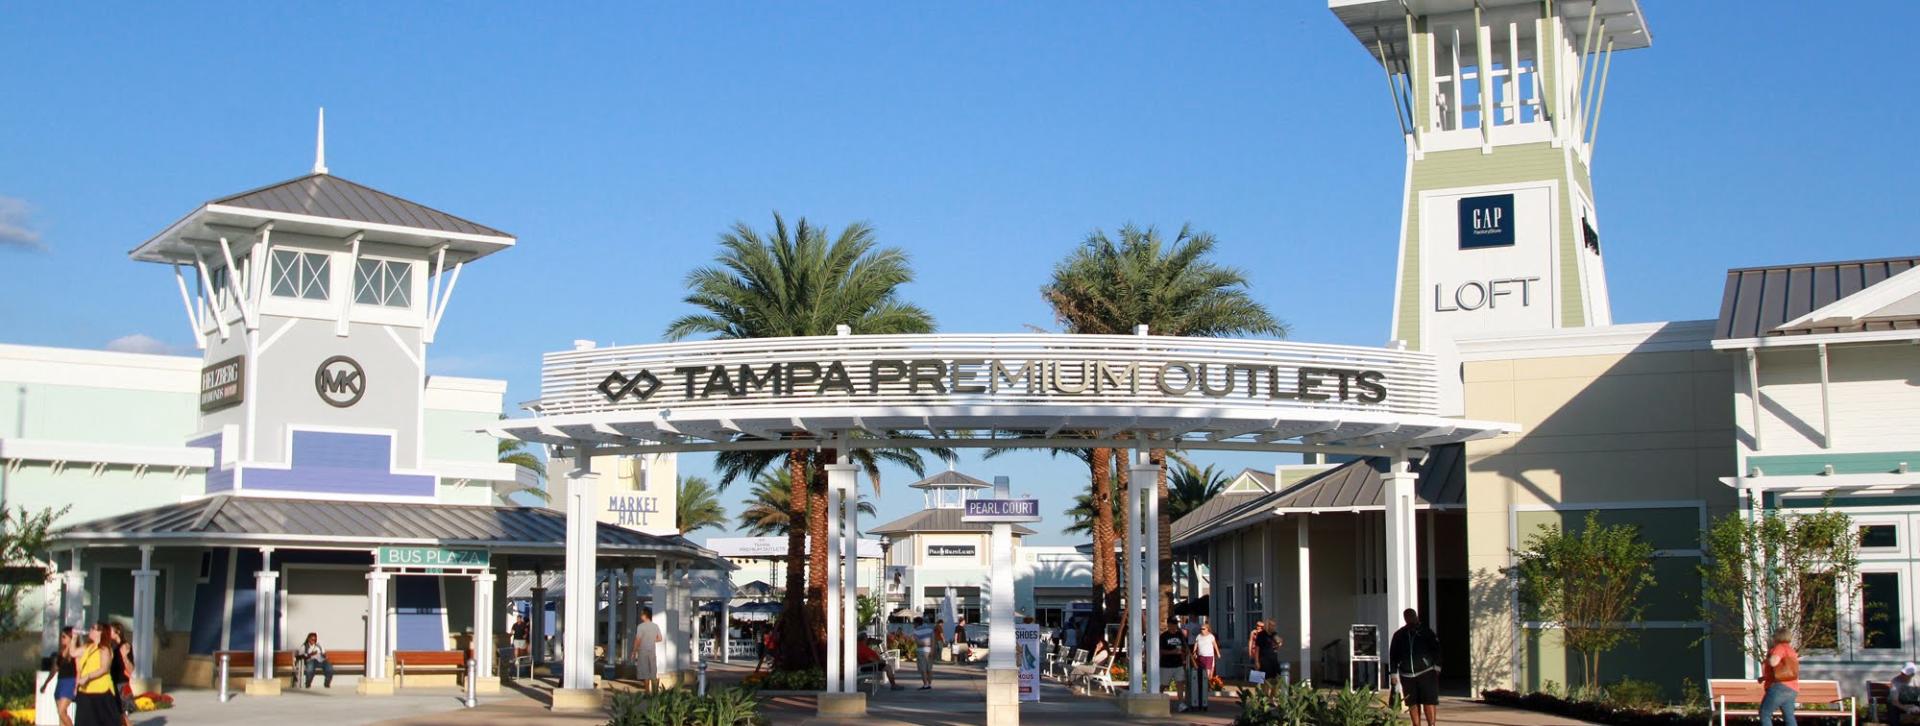 Tampa Bay Markets